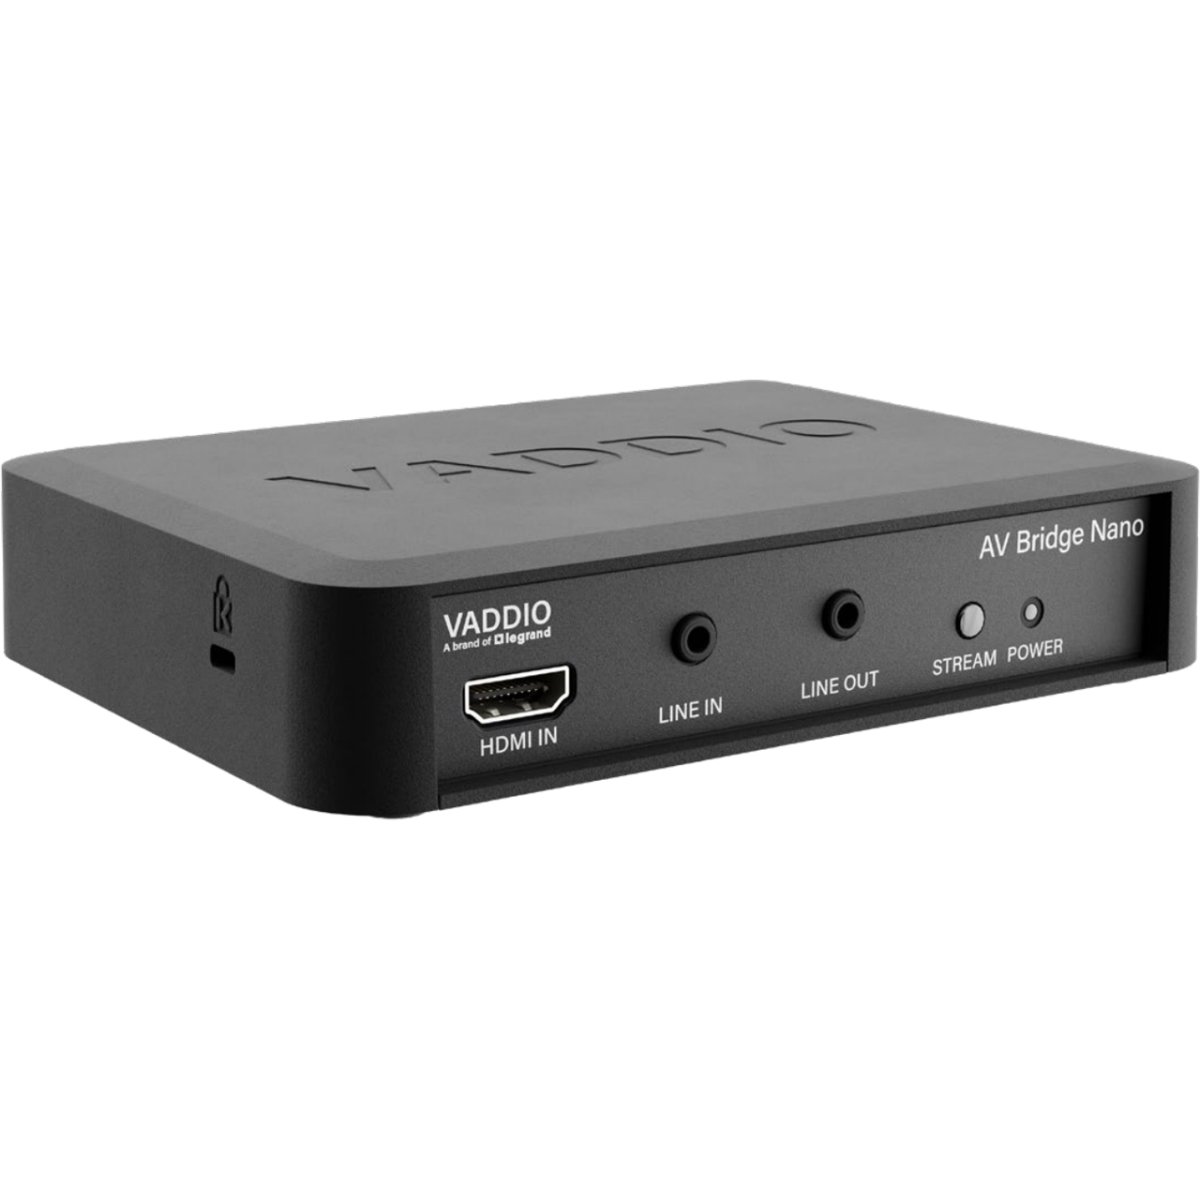 Picture of Vaddio VAD-999-82600000 AV Bridge Nano Portable Desktop Audio & Video Encoder with Conferencing - HDMI to Plug & Play USB 3.0